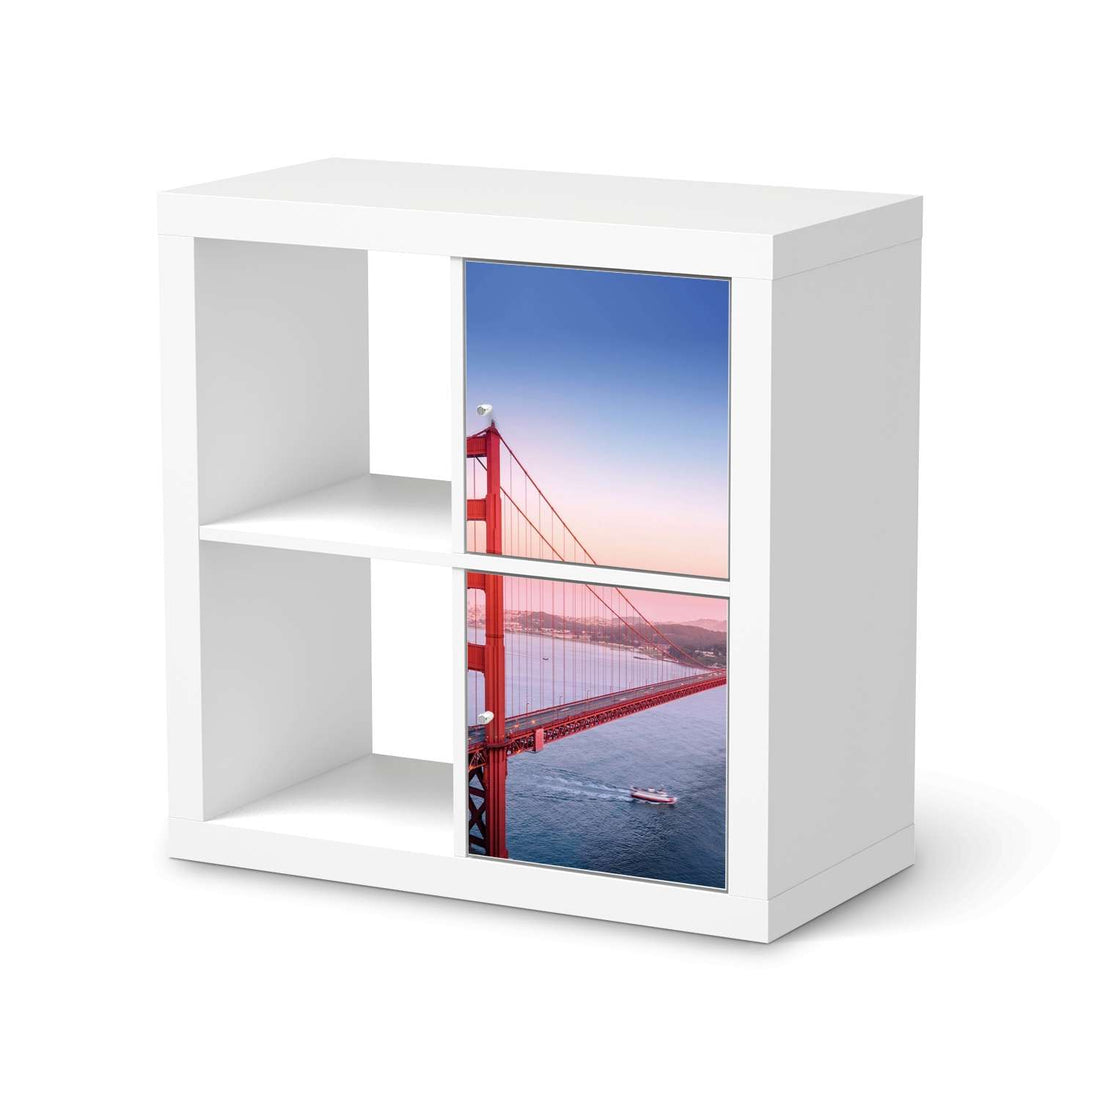 Klebefolie für Möbel Golden Gate - IKEA Expedit Regal 2 Türen Hoch  - weiss